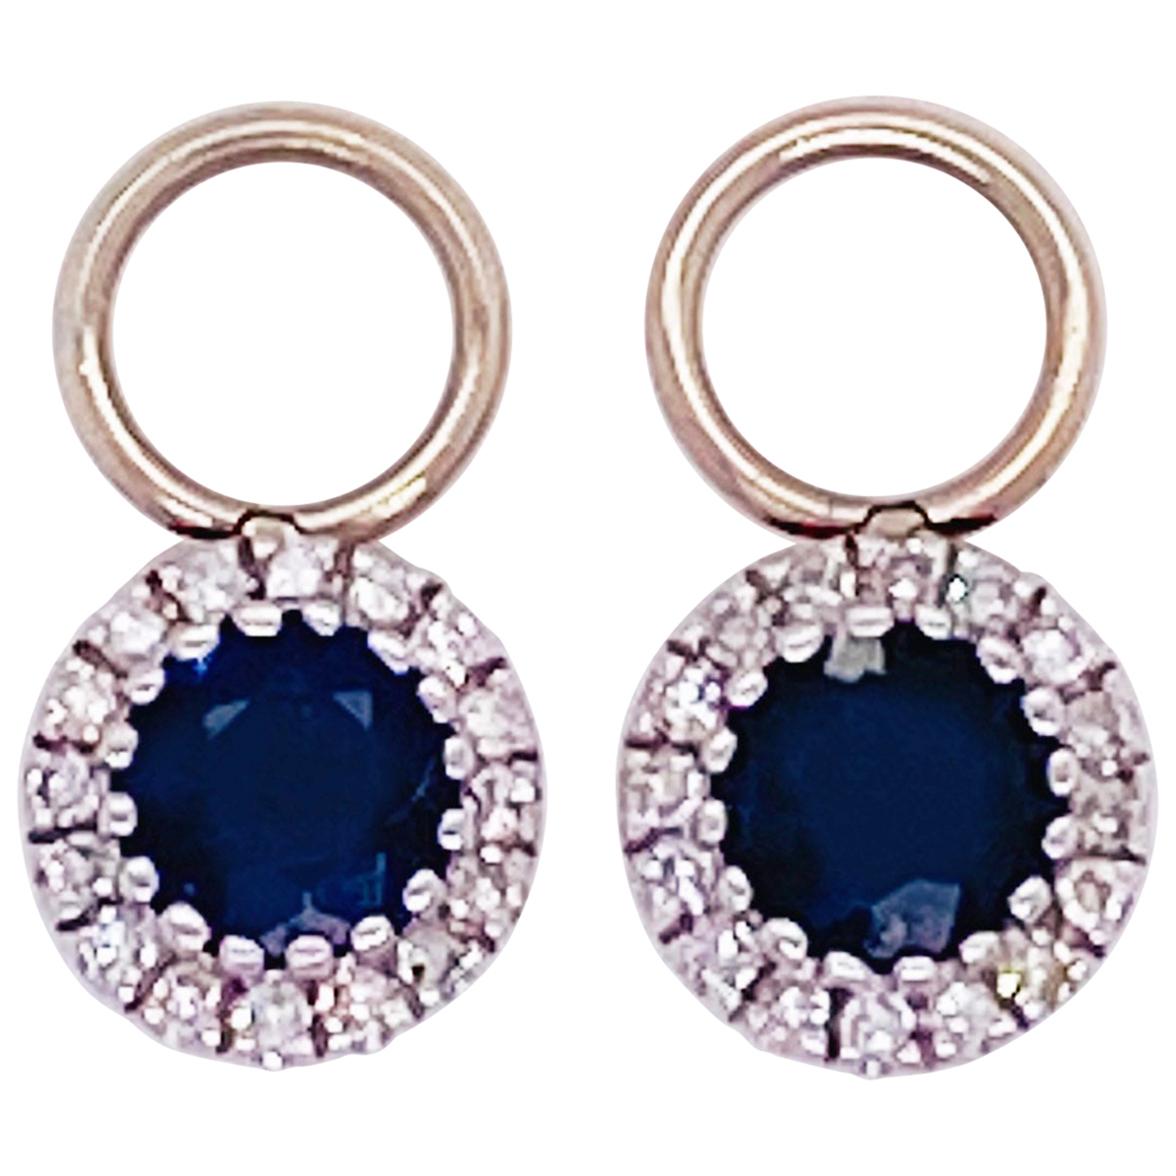 Boucles d'oreilles breloques en or 14 carats avec saphirs et diamants, saphir bleu 3/4 carat et diamants